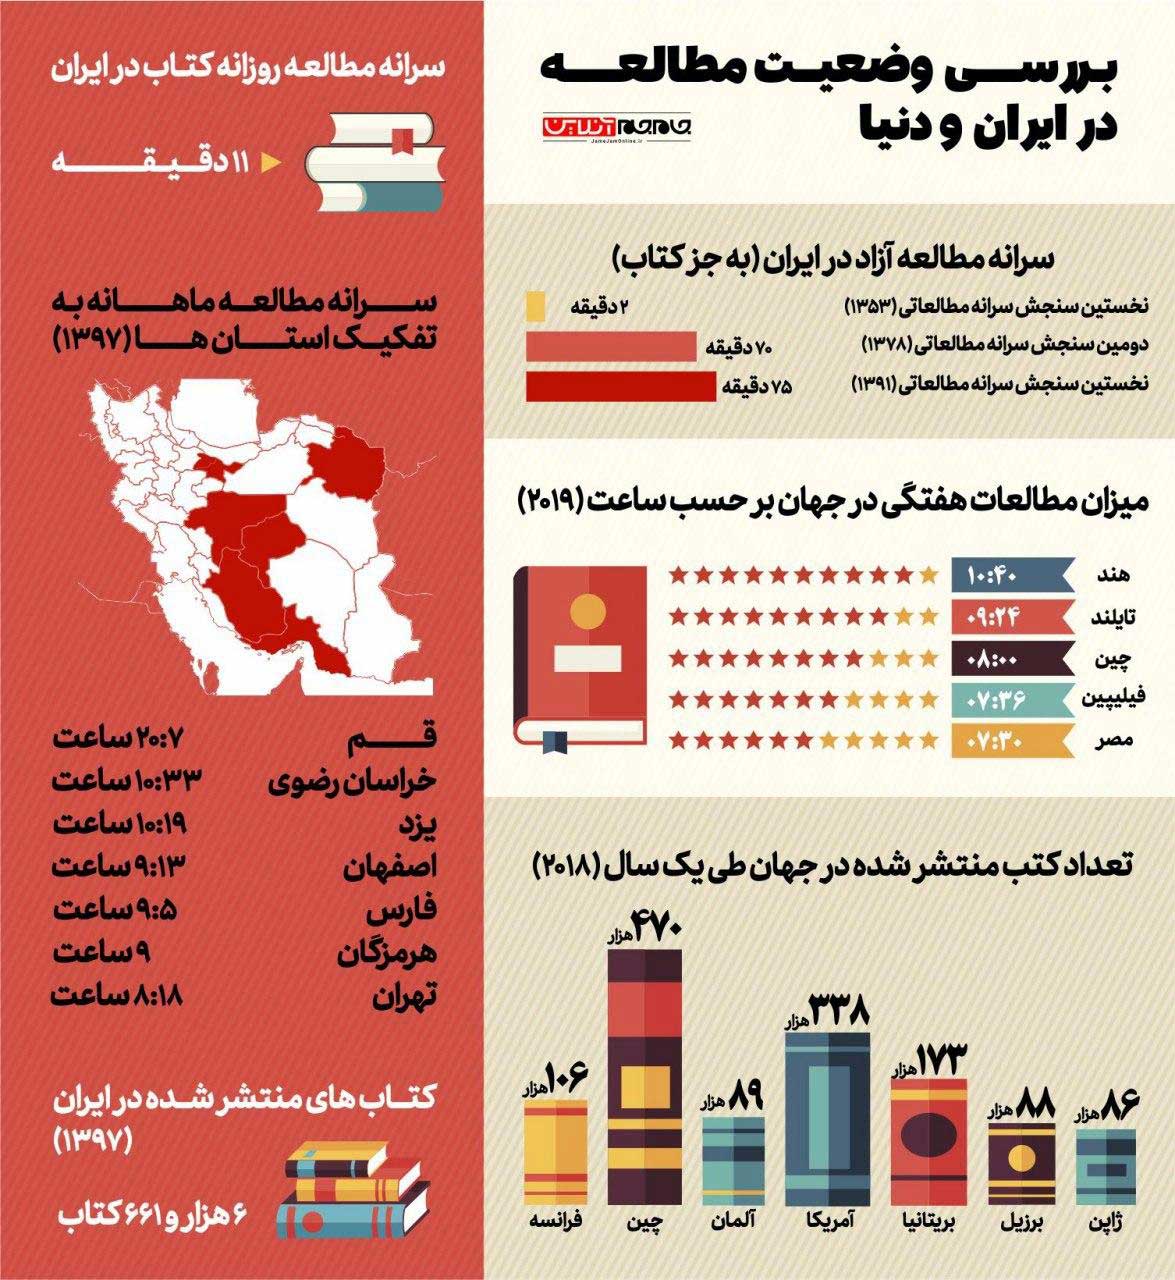 تصویر بررسی وضعیت مطالعه در ایران و دنیا